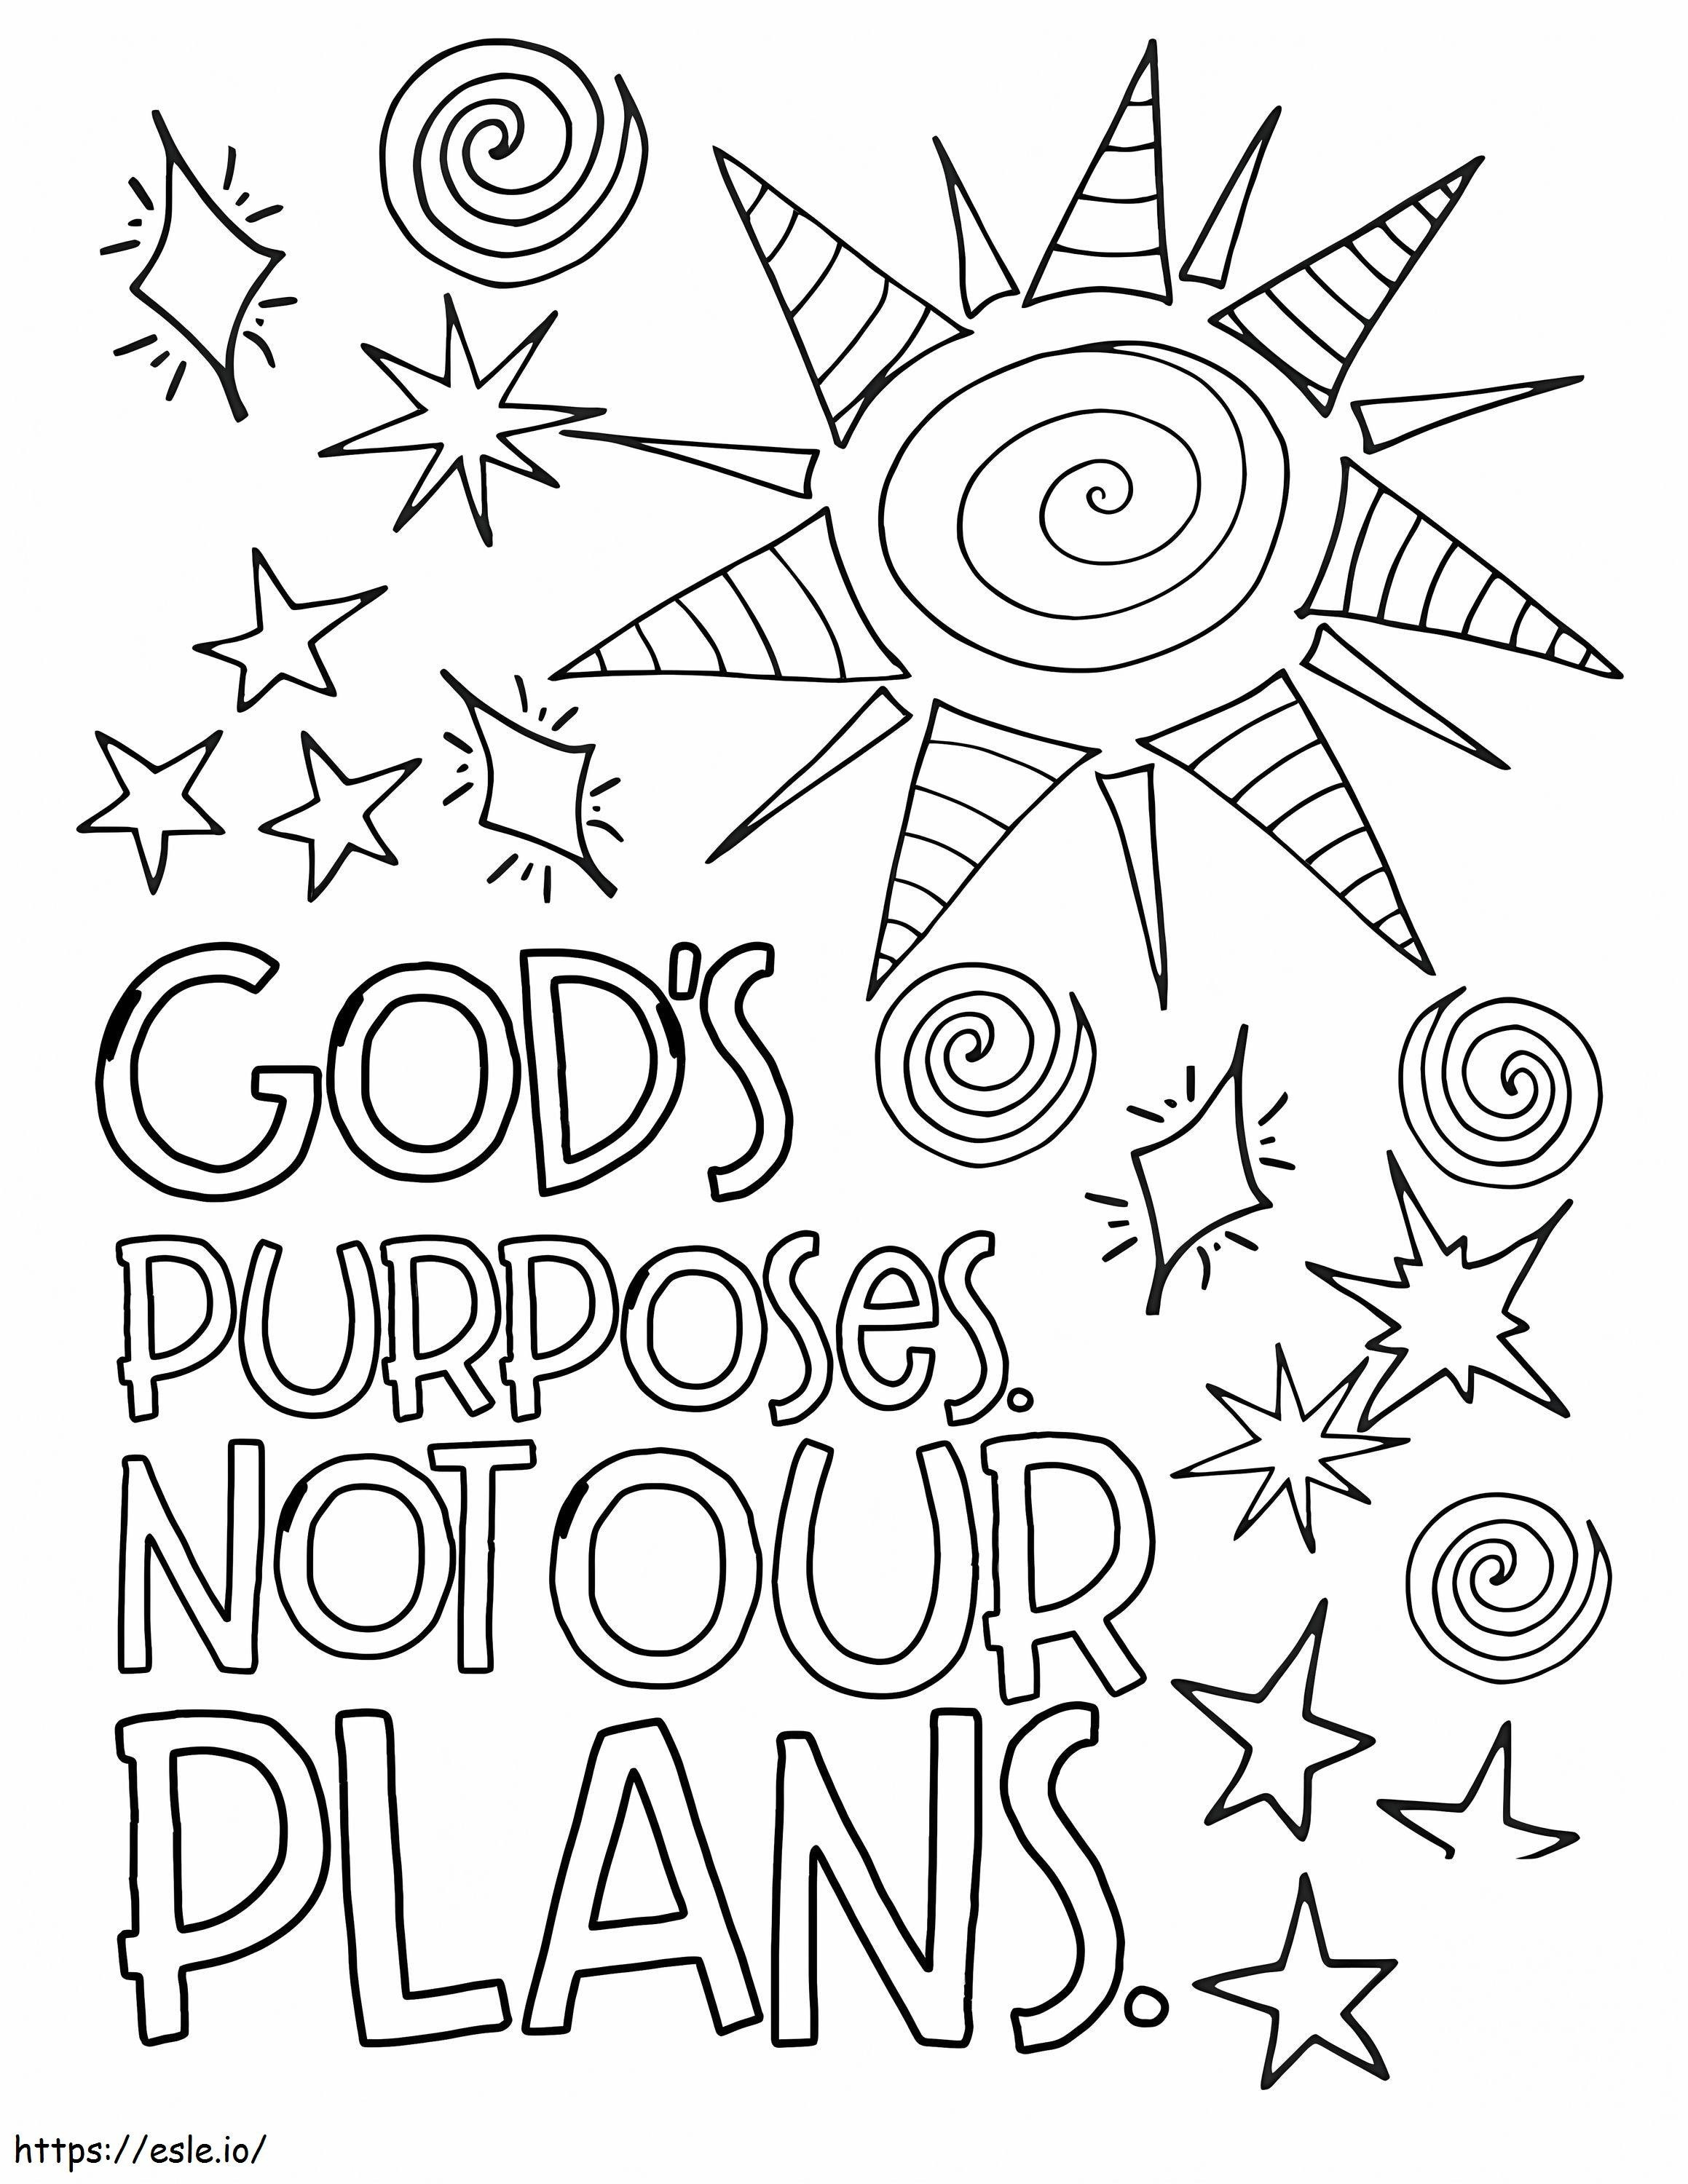 Tanrı'nın Amaçları Bizim Planlarımız Değildir boyama